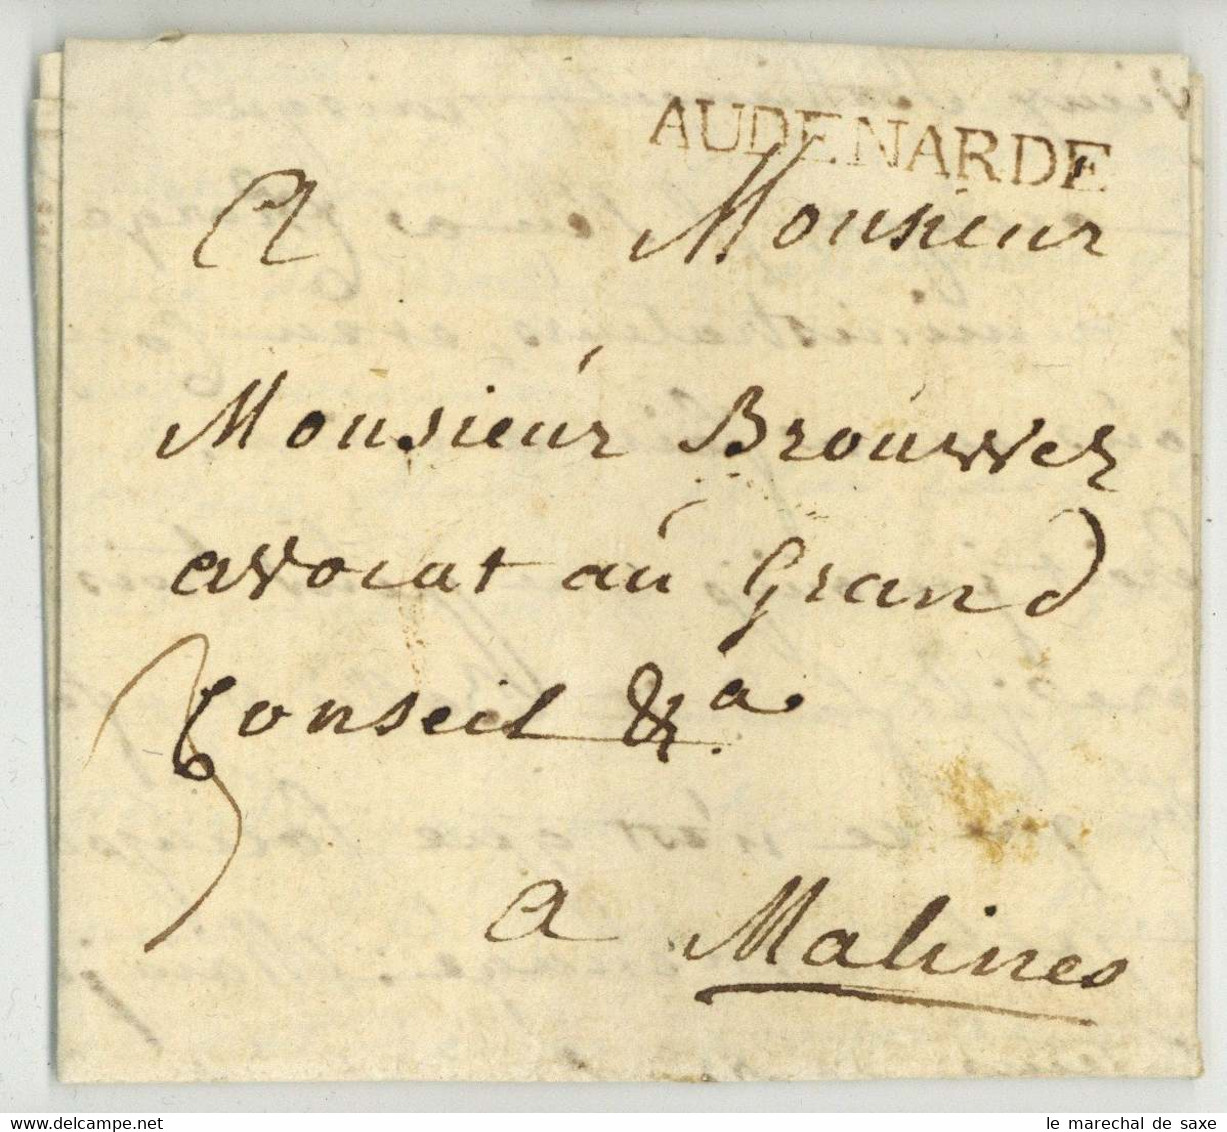 AUDENARDE Oudenaarde Renaix 1775 Pour Malines Levebvre - 1714-1794 (Paises Bajos Austriacos)